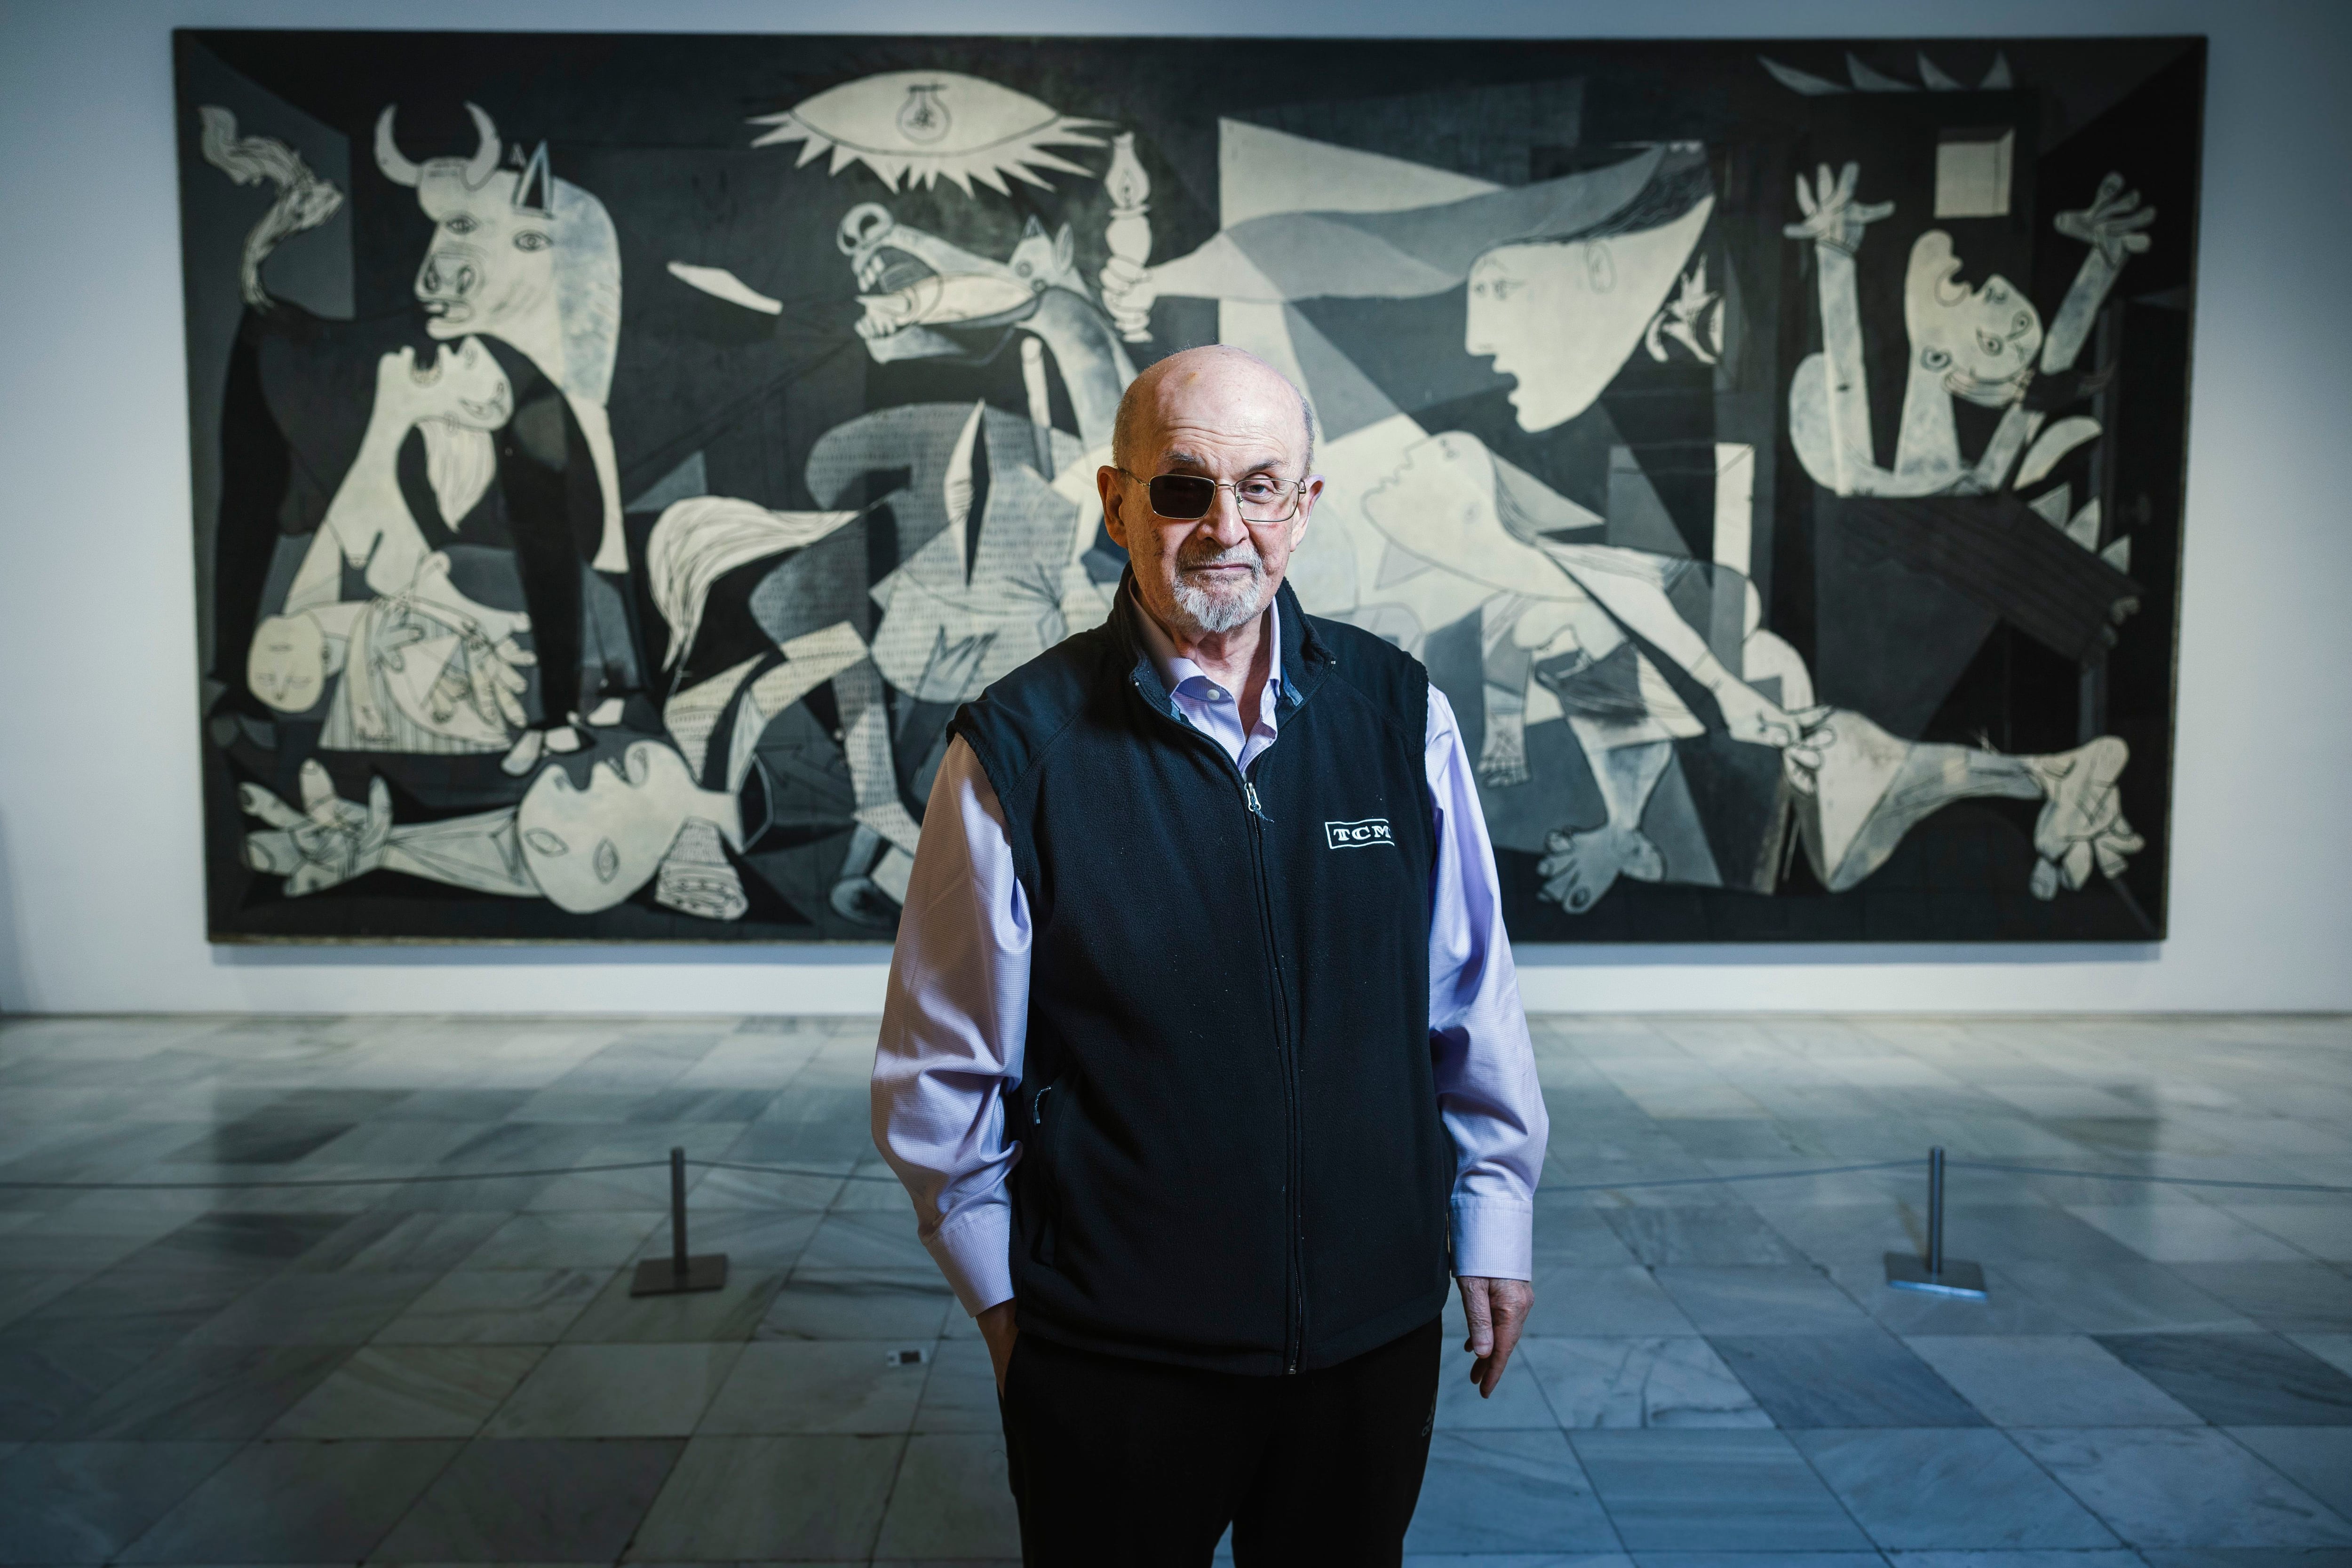 Salman Rushdie comparó las obras maestras de El Prado y Reina Sofía con los tiempos modernos, afirmando que “Guernica” sigue siendo relevante mientras las bombas siguen cayendo.